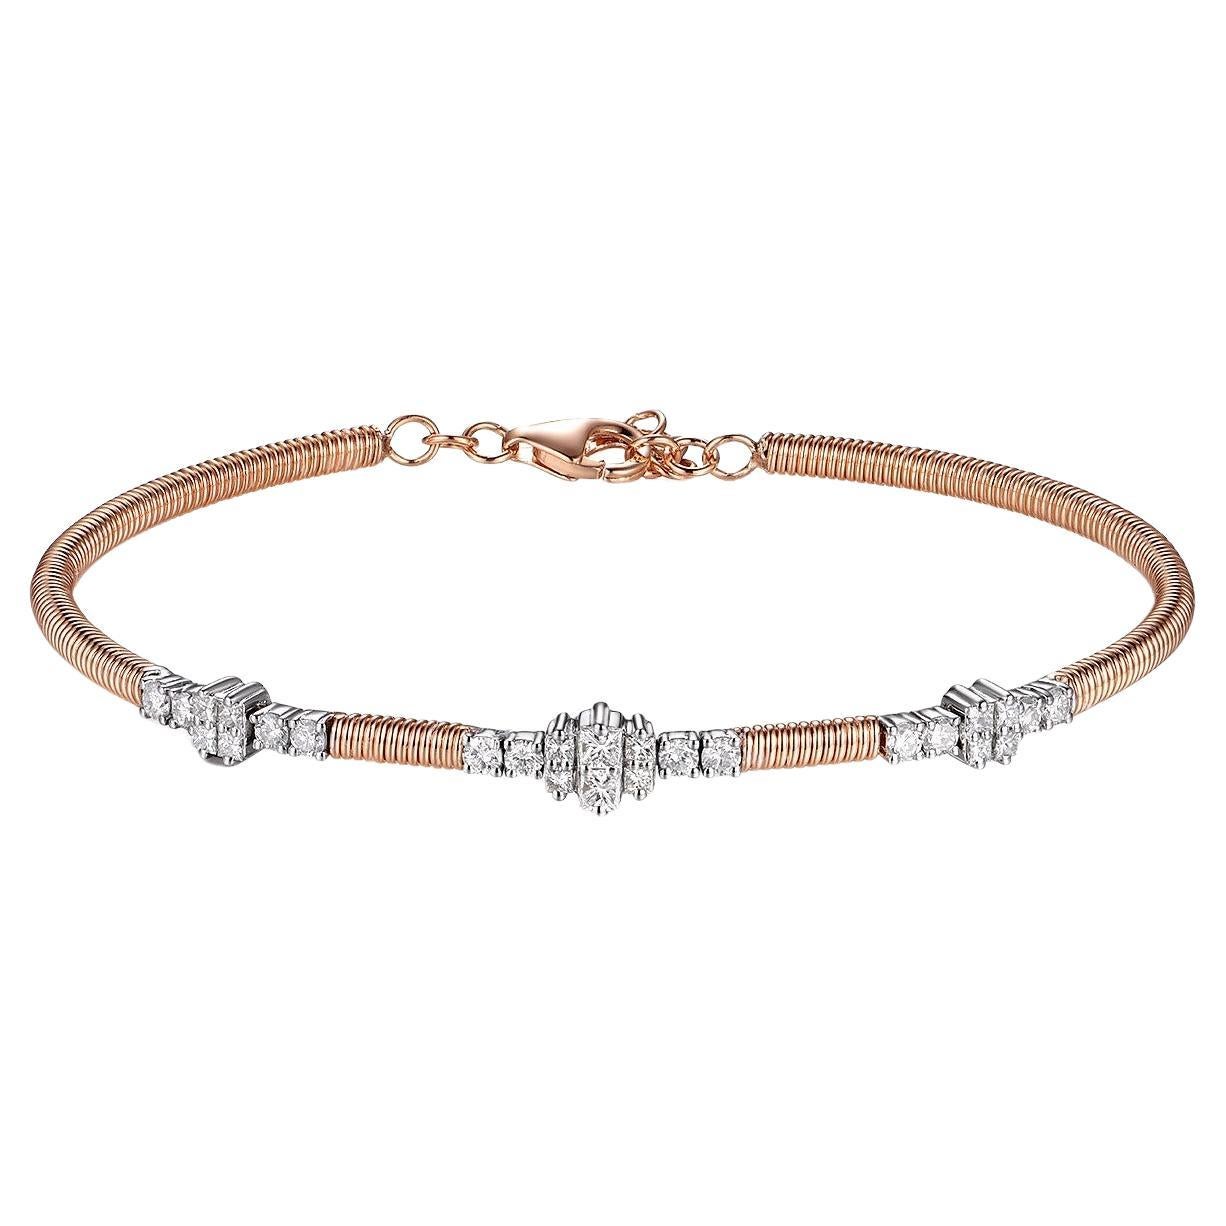 Le bracelet à diamants de 0,66 carat en or blanc et rose 18 carats est un bijou époustouflant qui allie harmonieusement élégance et sophistication moderne. Ce bracelet présente une combinaison captivante de diamants de taille princesse et de